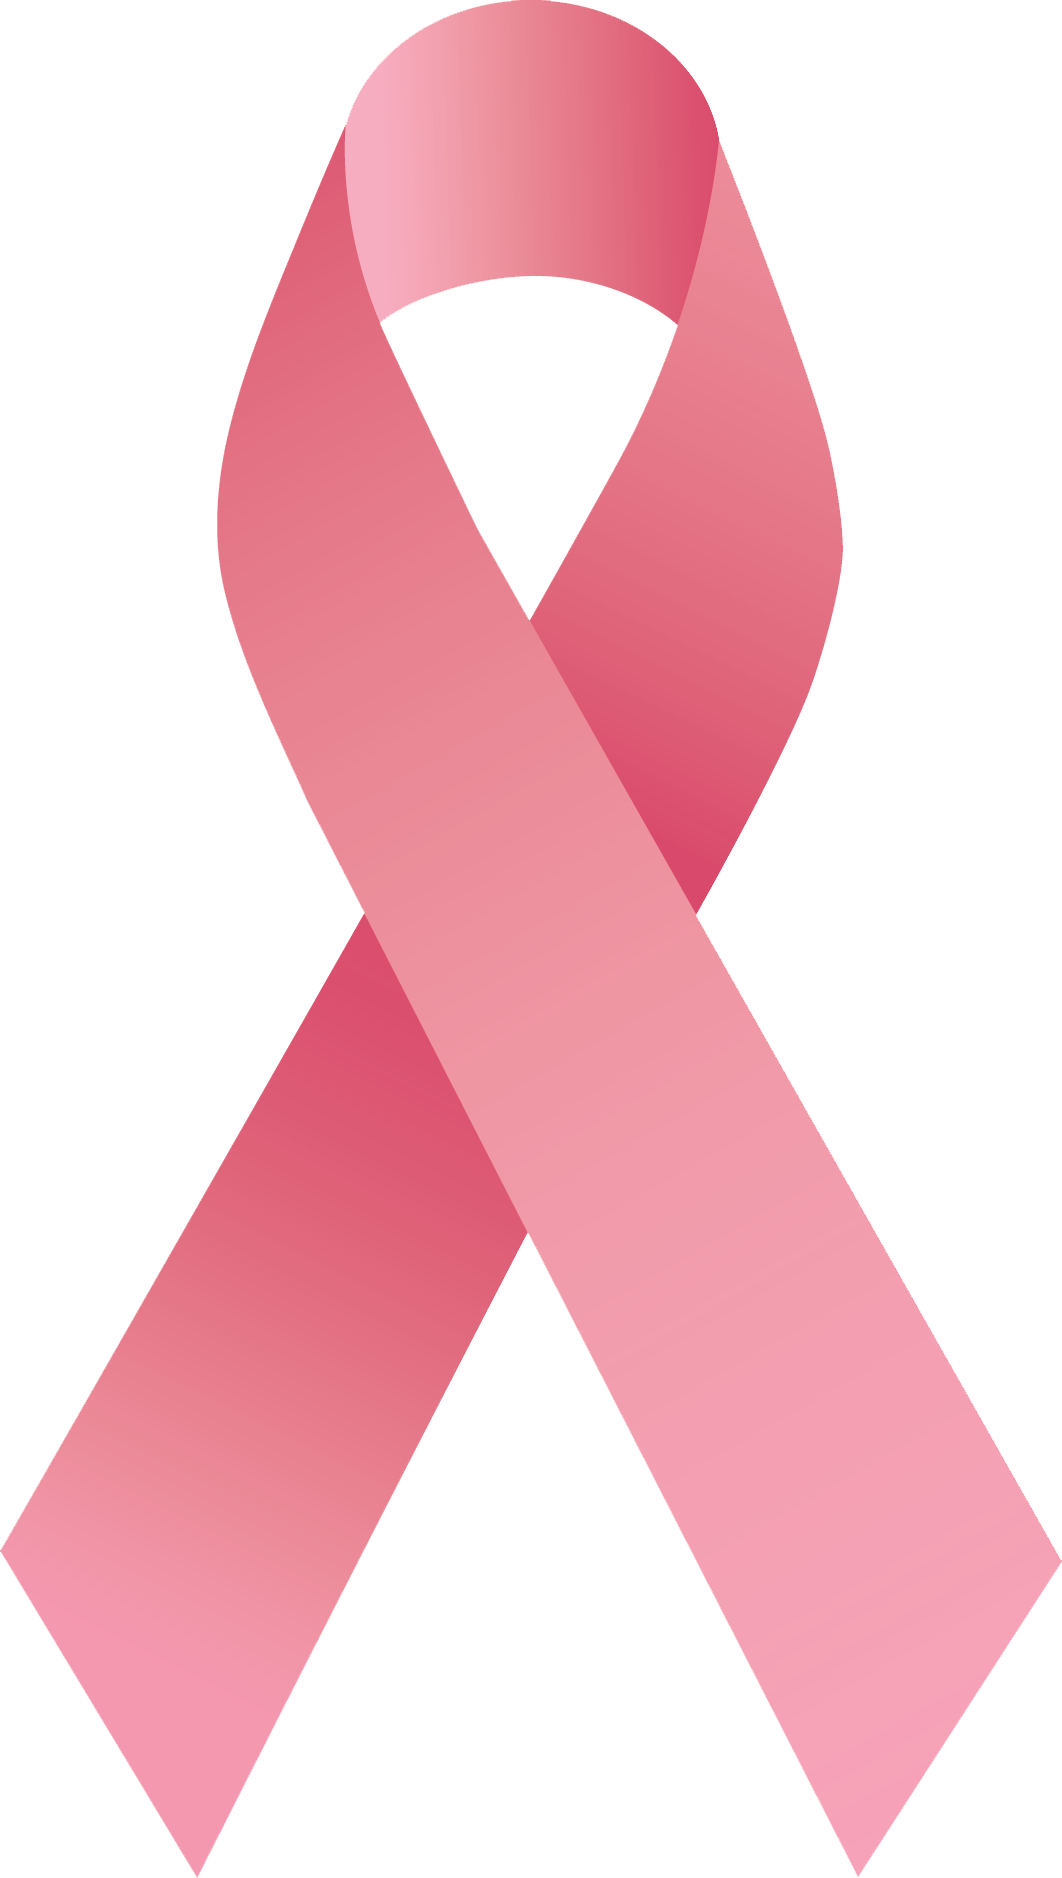 Icono de símbolo de cáncer PNG descargar imagen